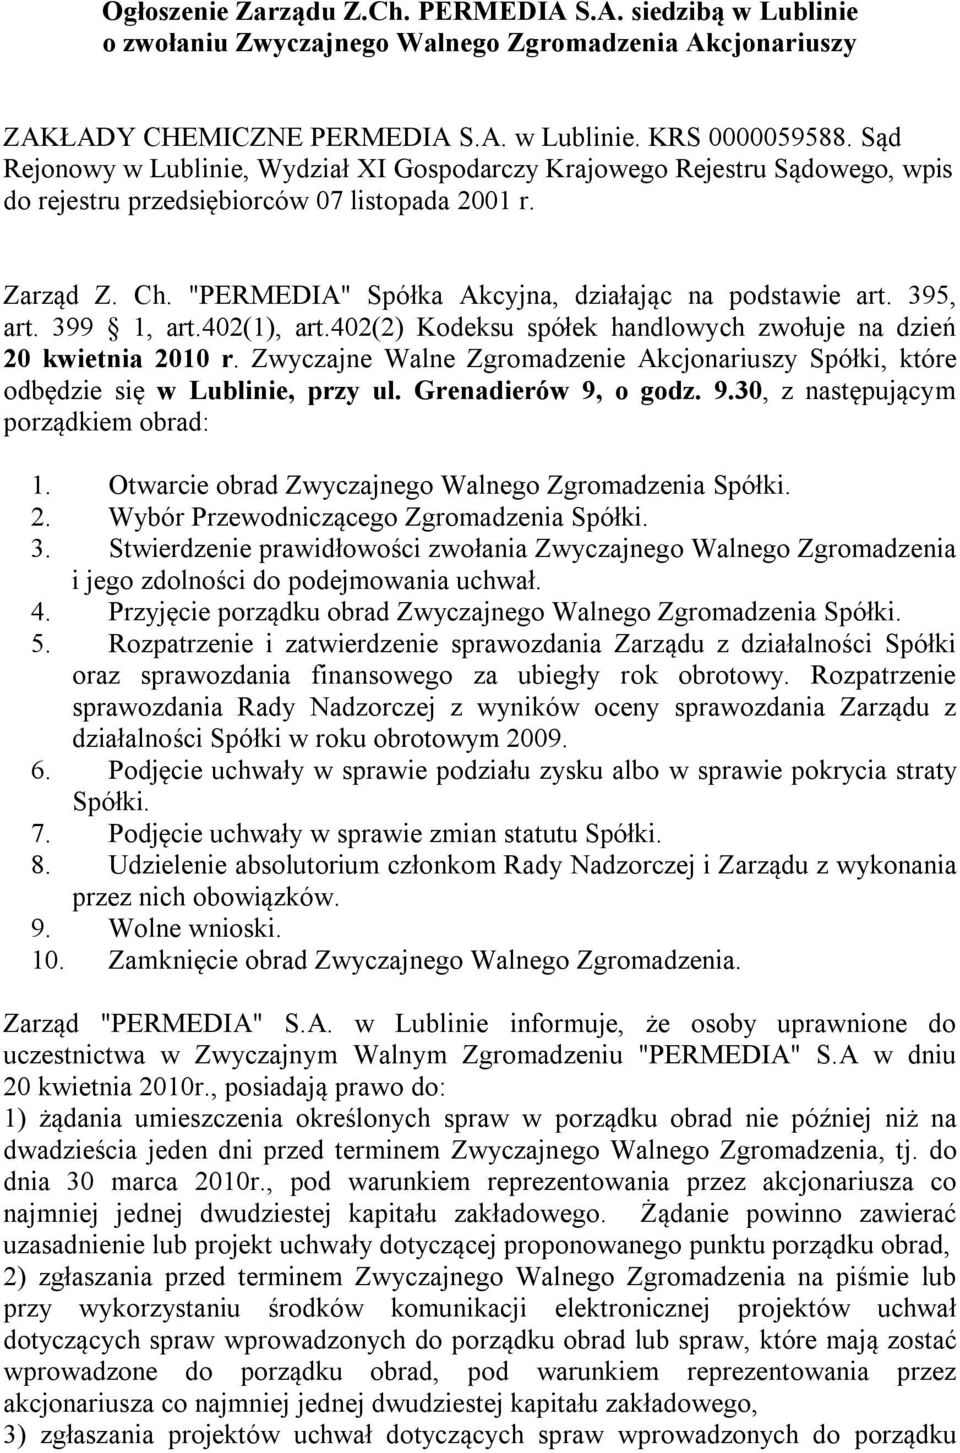 395, art. 399 1, art.402(1), art.402(2) Kodeksu spółek handlowych zwołuje na dzień 20 kwietnia 2010 r. Zwyczajne Walne Zgromadzenie Akcjonariuszy Spółki, które odbędzie się w Lublinie, przy ul.